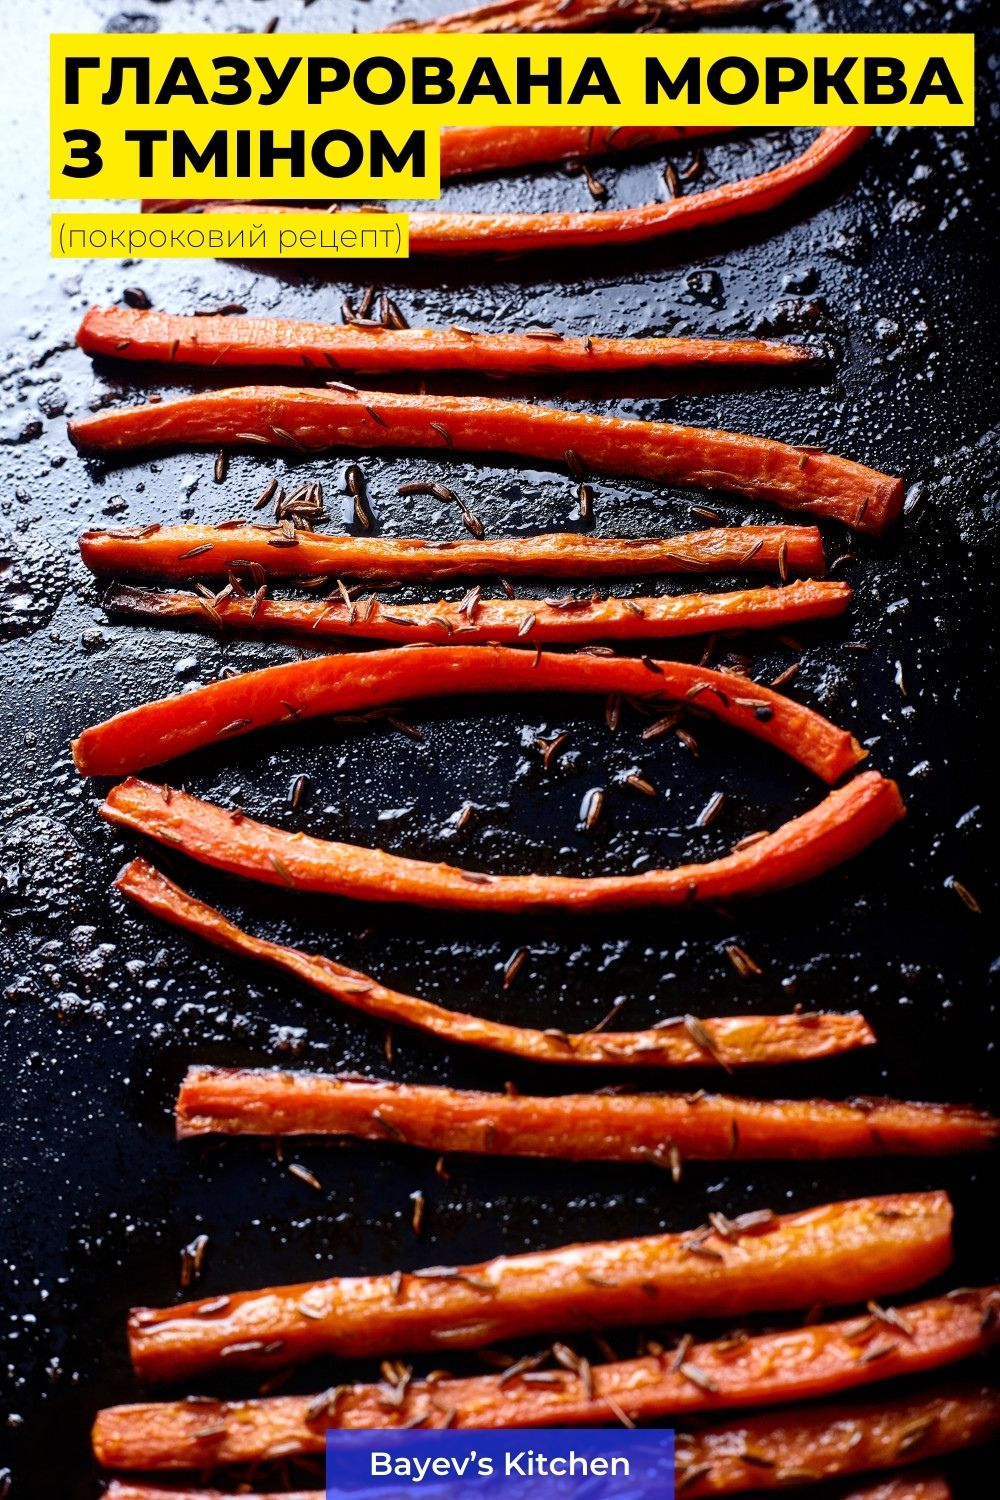 Приготована за цим рецептом морква - відмінна знахідка для вибагливих їдків на зразок мене. Вона ніжна та солодка, добре пропечена зовні та м'яка всередині. Цю моркву можна поставити на святковий стіл як закуску, а можете і приготувати для себе коханого, як доповнення до овочевих та м'ясних страв.